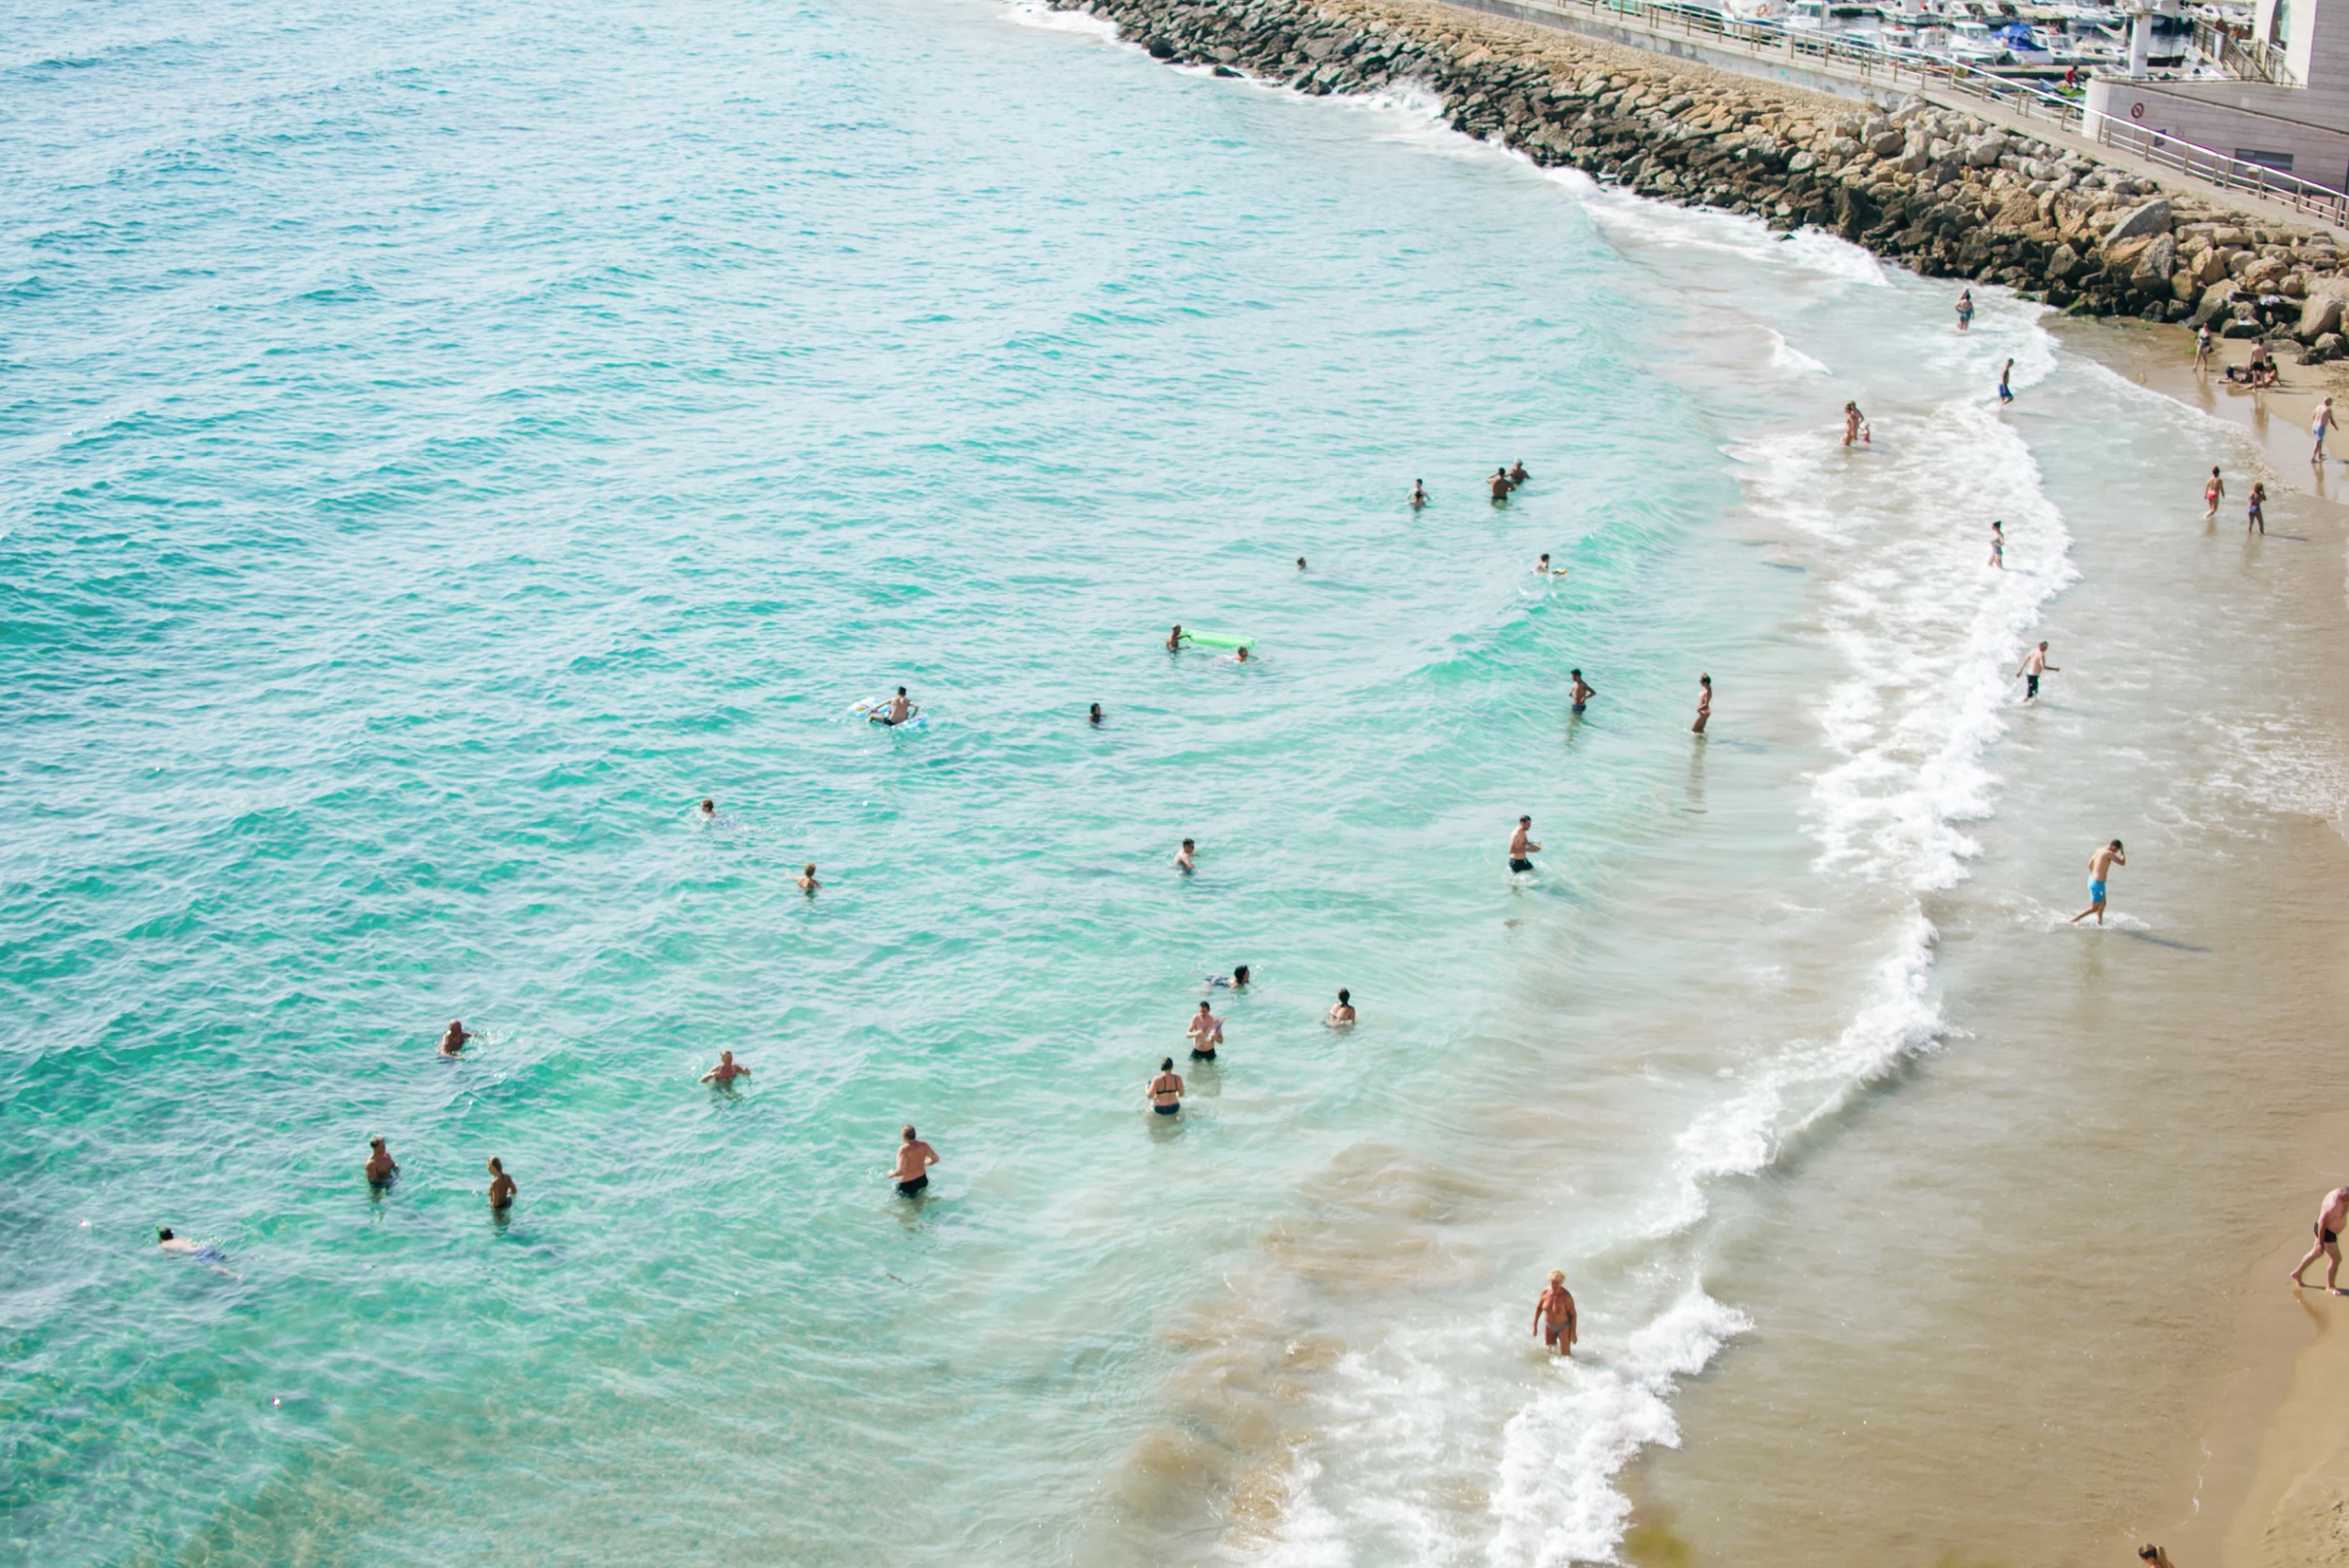 Badeferie i Spanien: Her er 4 fantastiske strande, du bør prøve